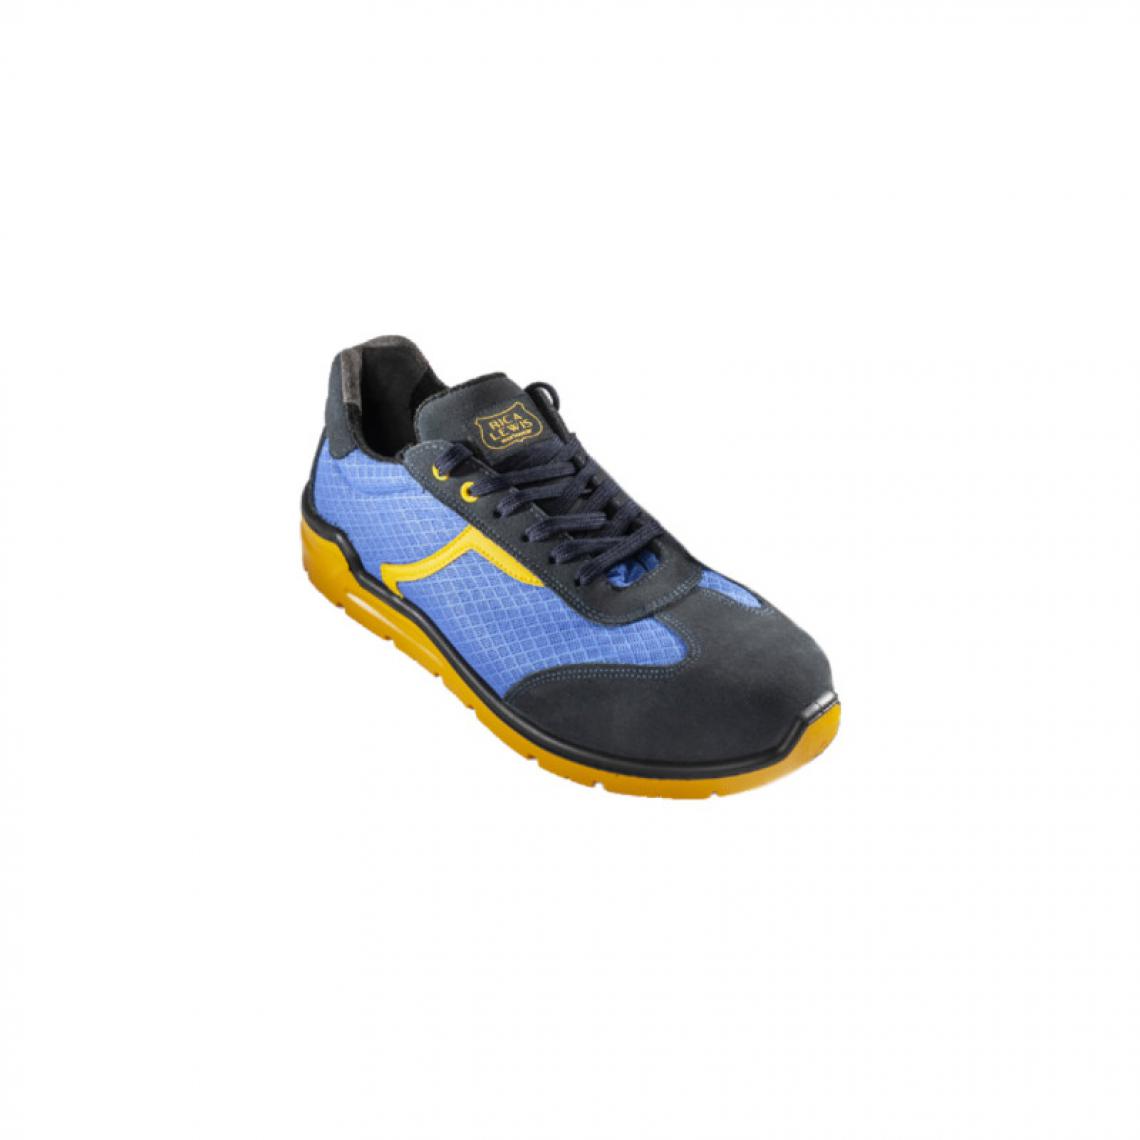 Rica Lewis - Chaussures de protection S1P RICA LEWIS - Homme - Taille 40 - Sport-détente - STORM - Equipement de Protection Individuelle